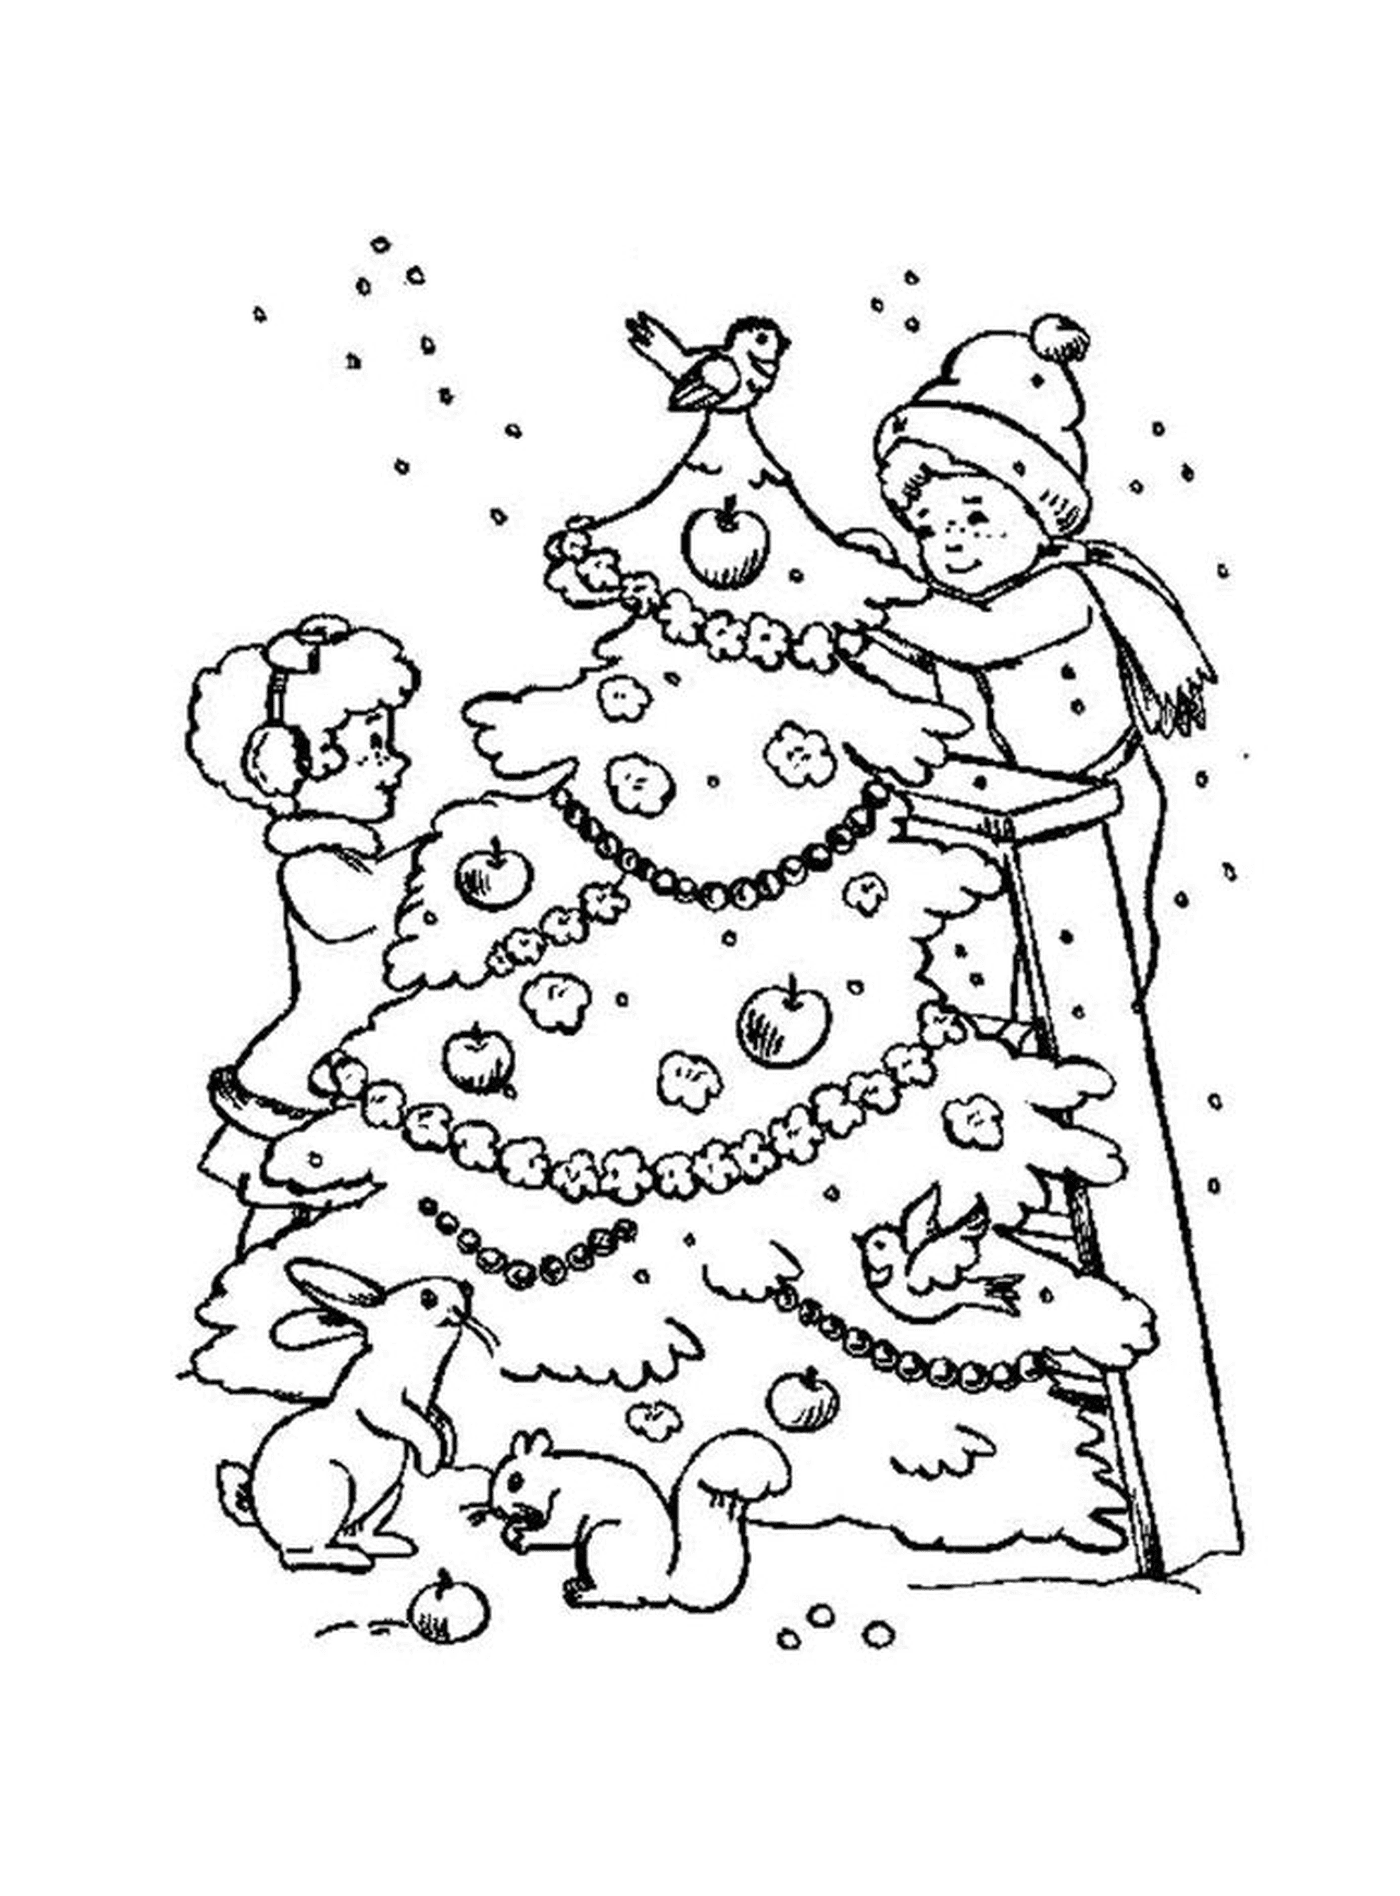  一个孩子站在圣诞树前面 